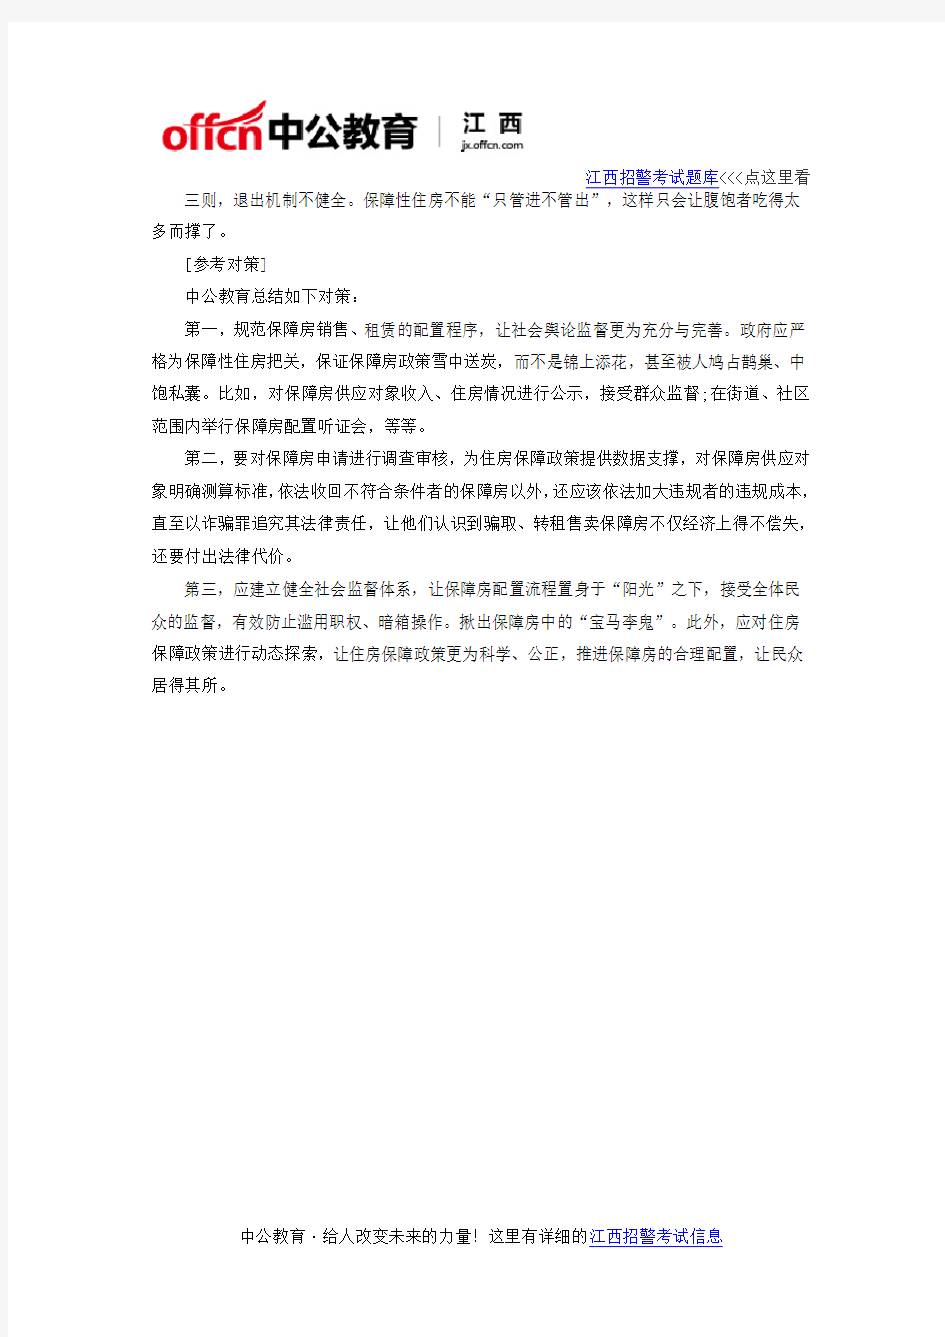 2017年江西招警考试申论热点话题开宝马住廉租房有损政府公信力